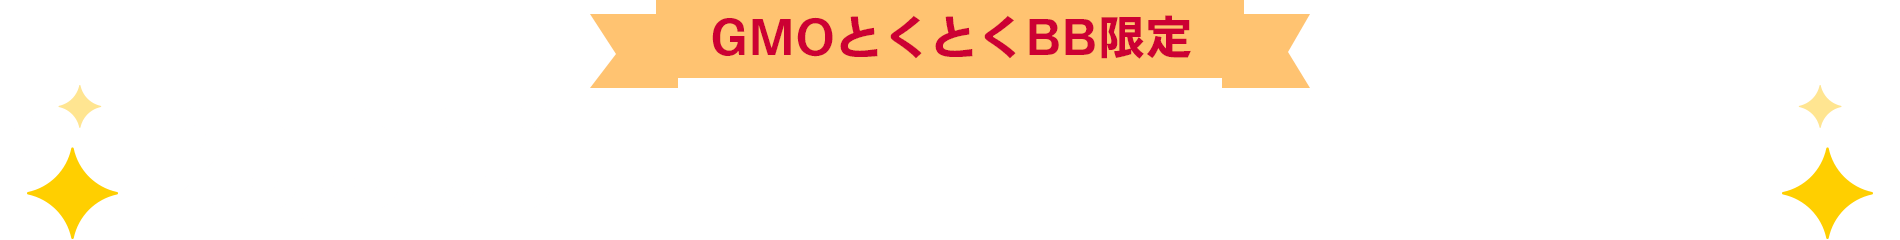 【GMOとくとくBB限定】Amazonギフトカードプレゼント